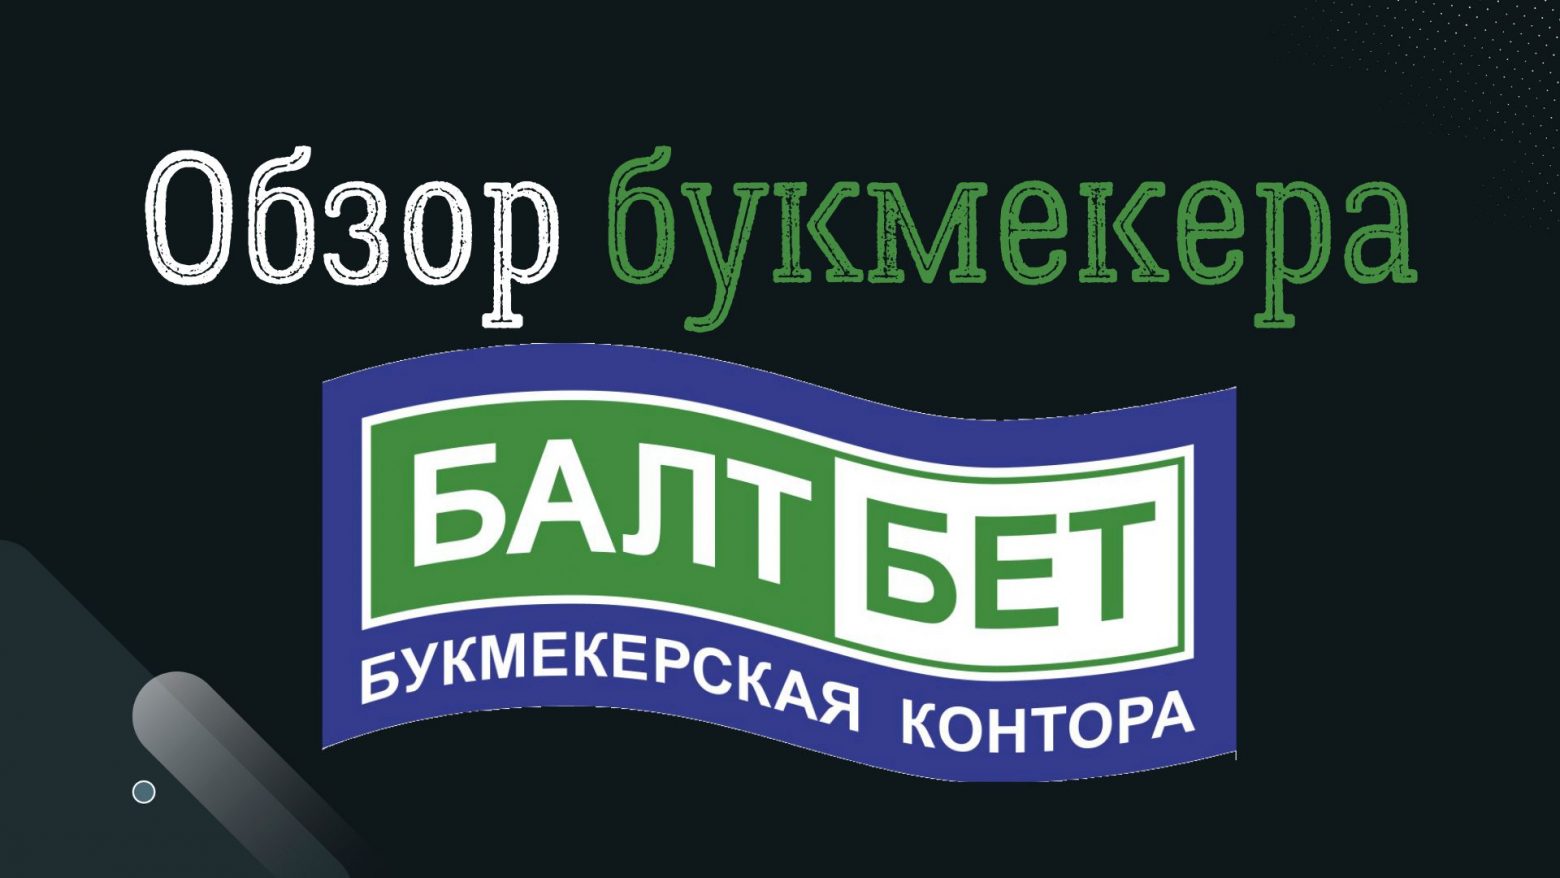 Балтбет букмекерская контора барнаул покер на раздевание онлайн играть на русском бесплатно без регистрации